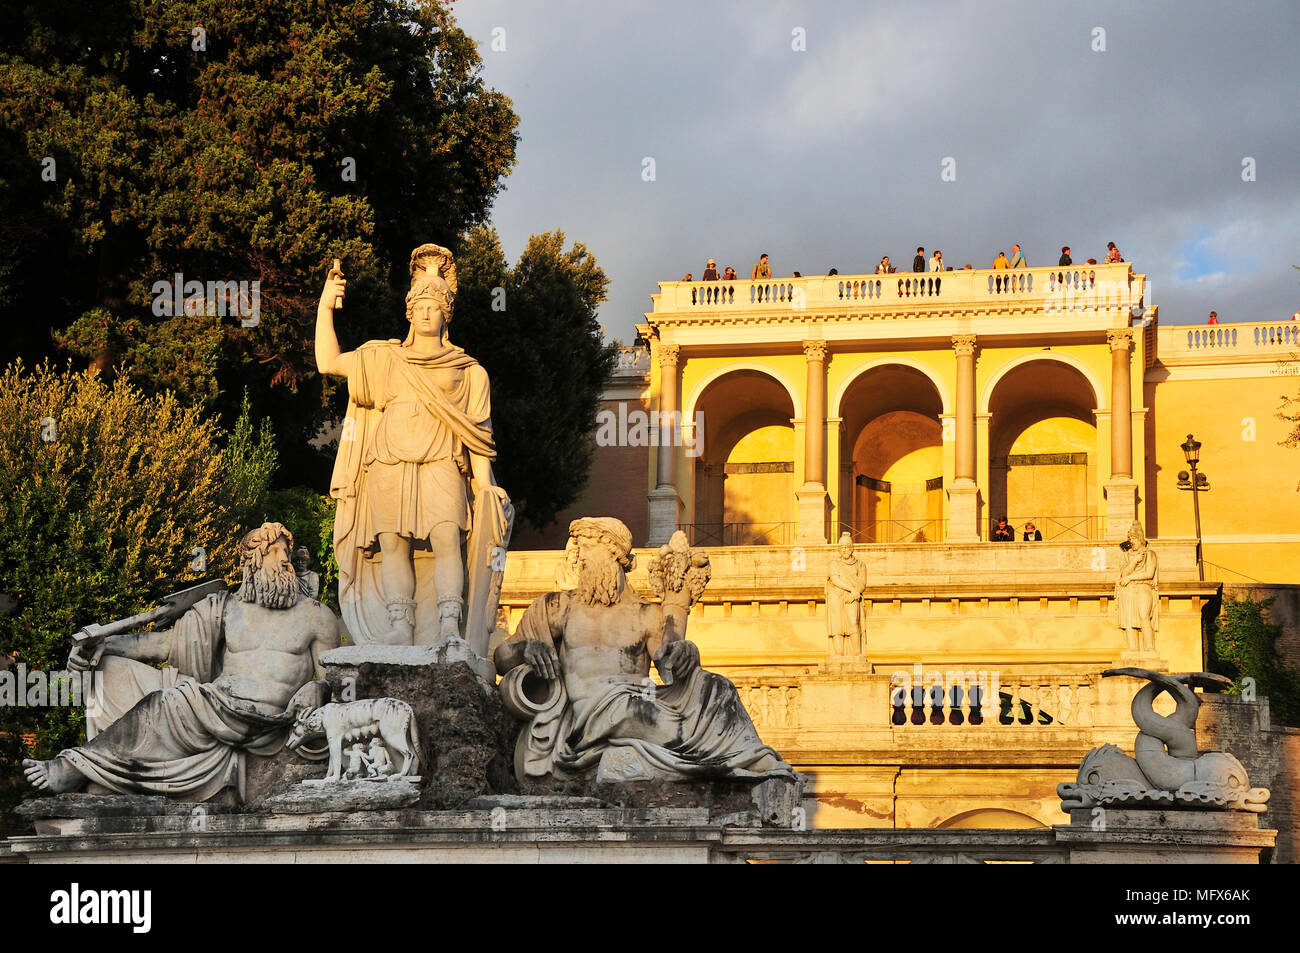 Brunnen der Göttin Roma (Fontana della Dea di Roma) und Terrazza del Pincio auf dem Pincio. Piazza del Popolo, Rom. Italien Stockfoto